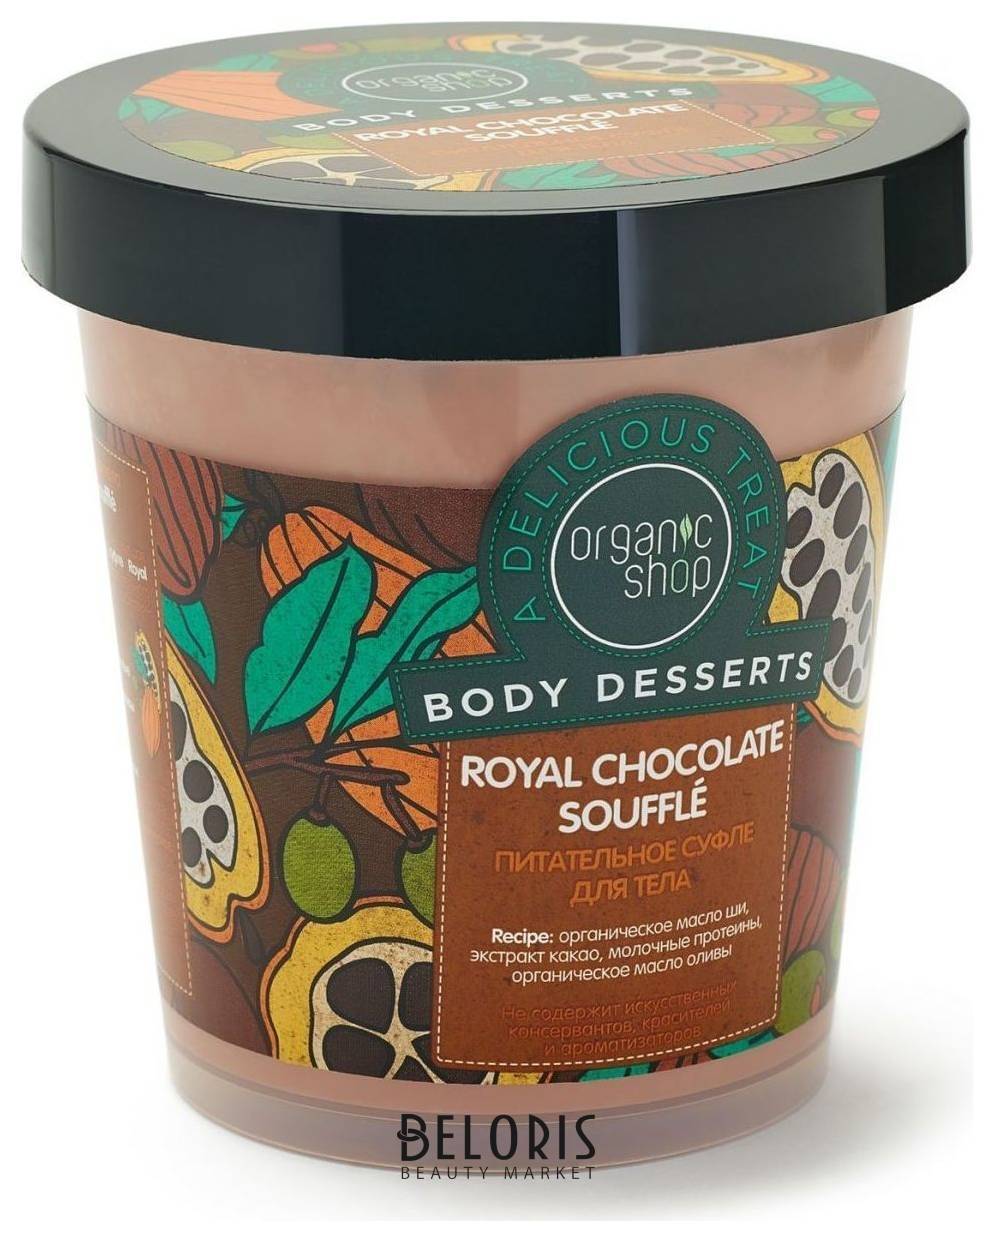 Питательное суфле для тела шоколад Organic Shop Body Desserts